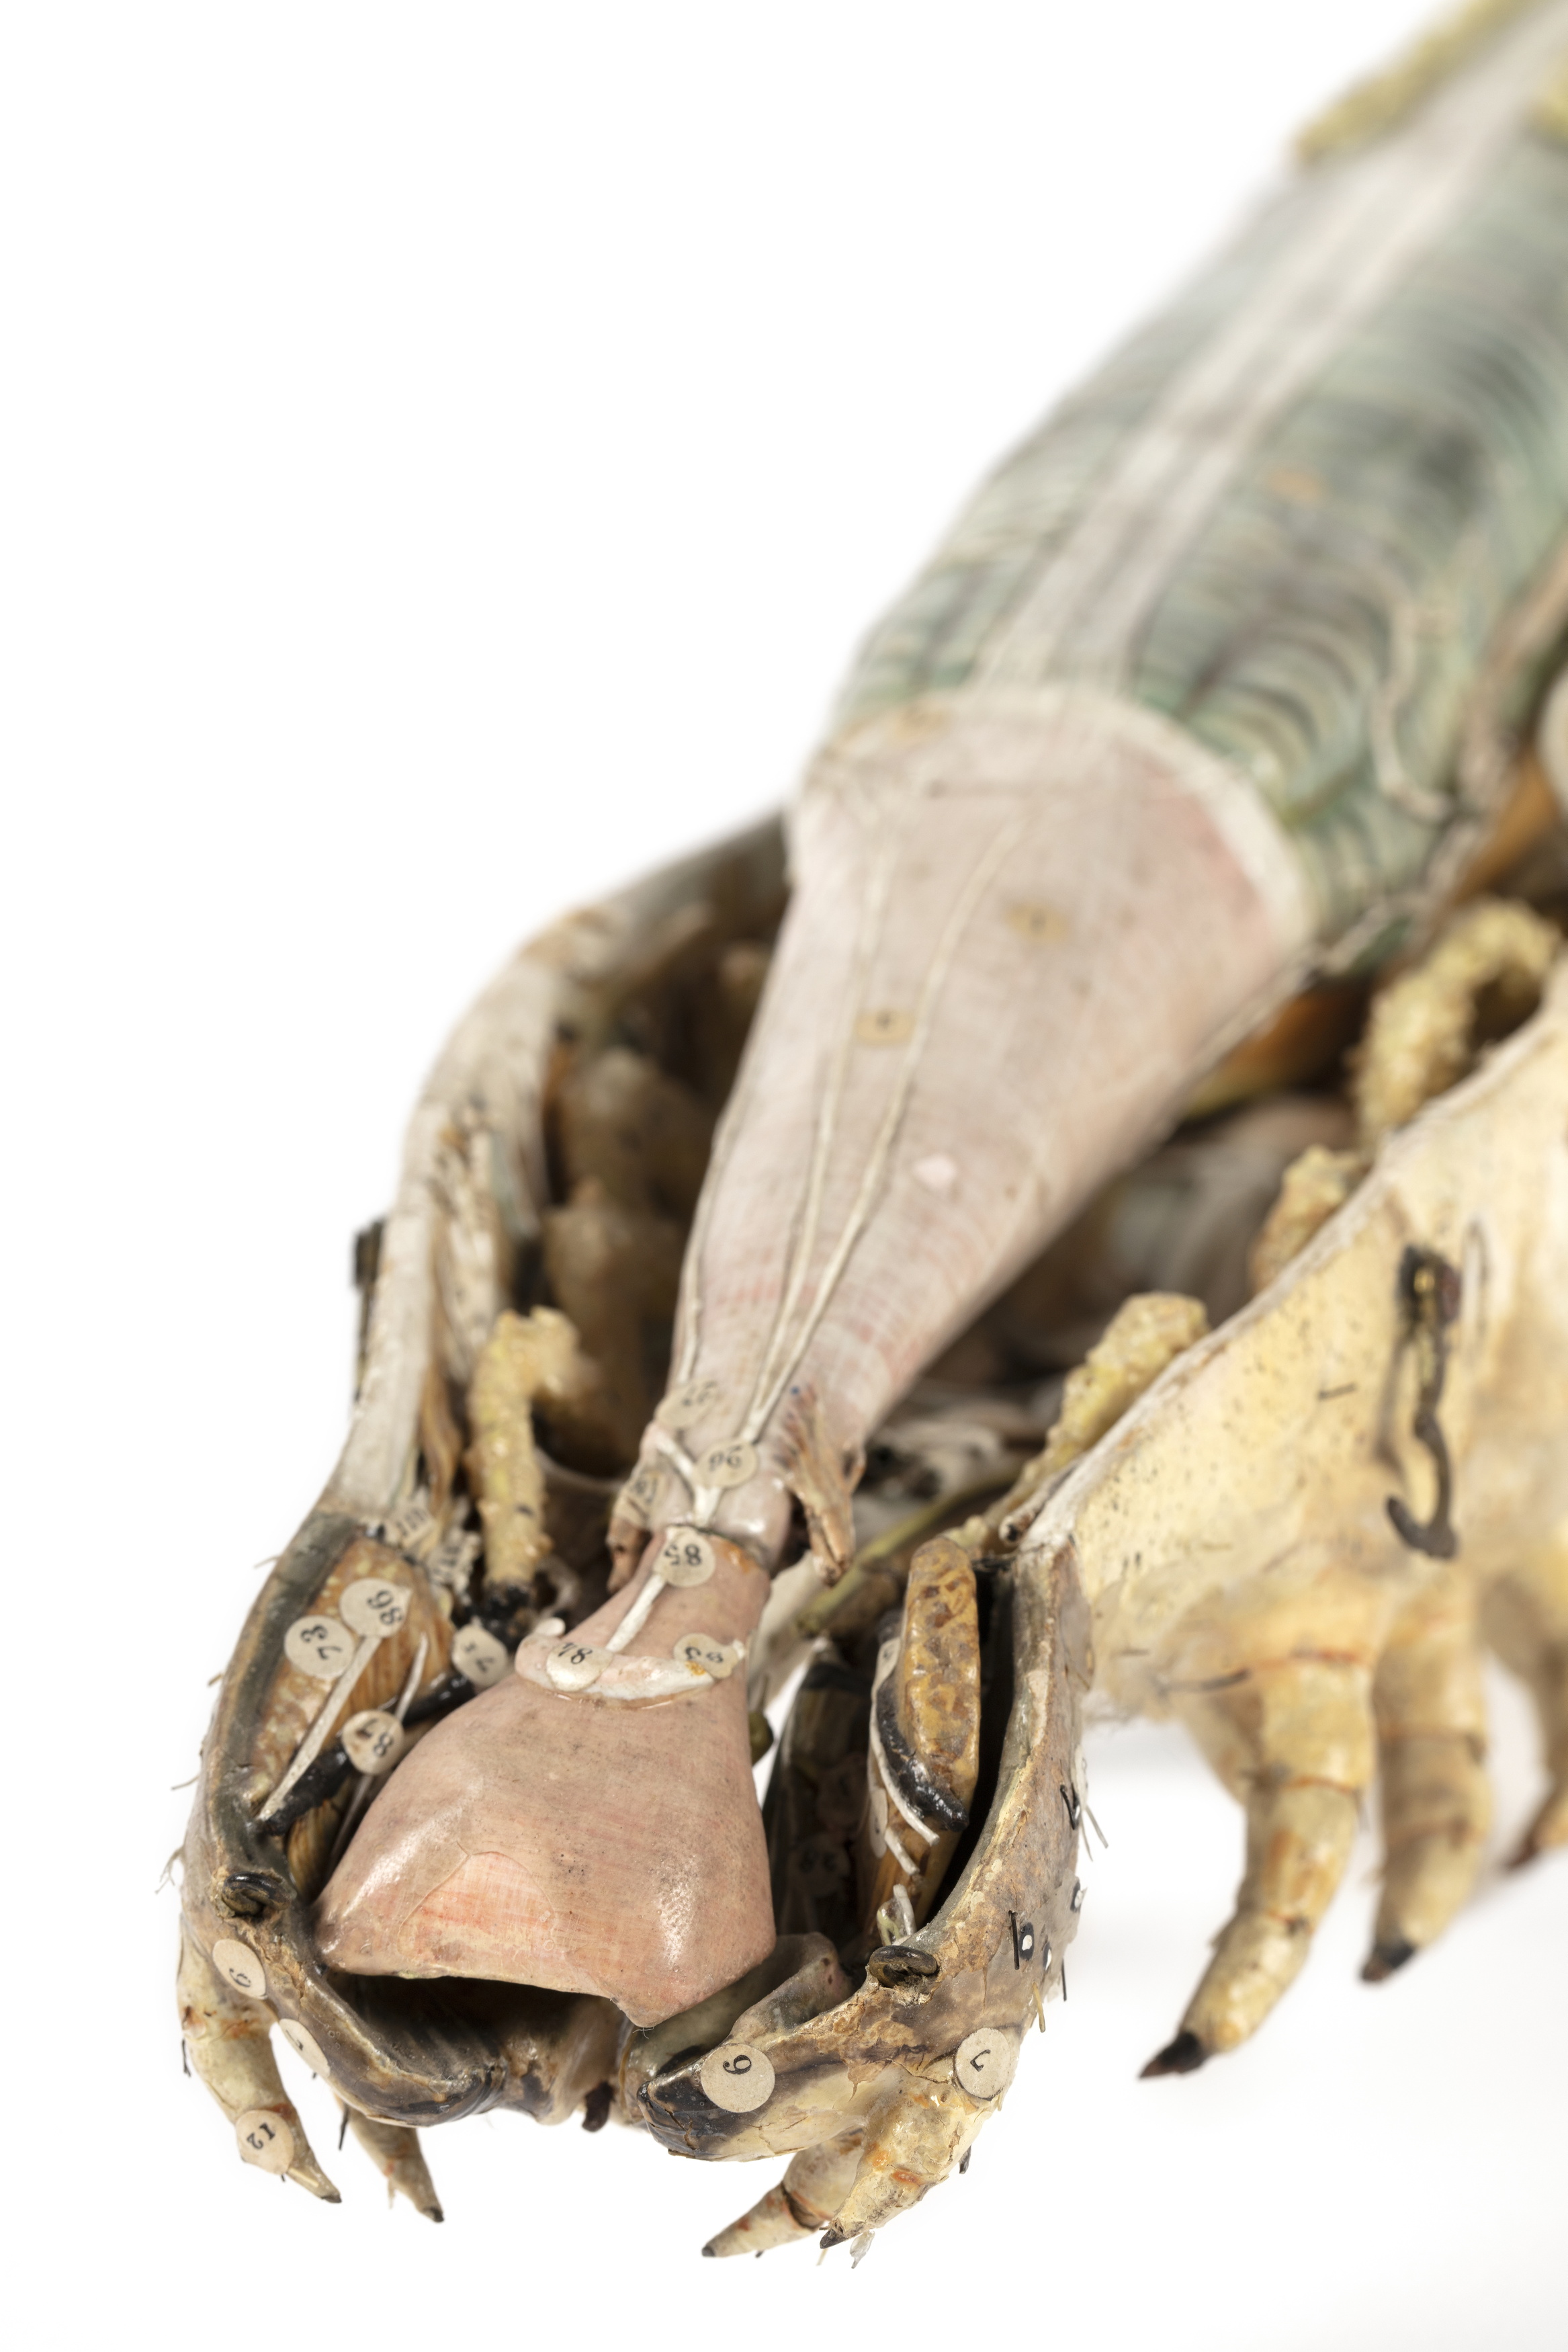 Papier-mâché anatomical model of a silkworm by Dr Louis Auzoux